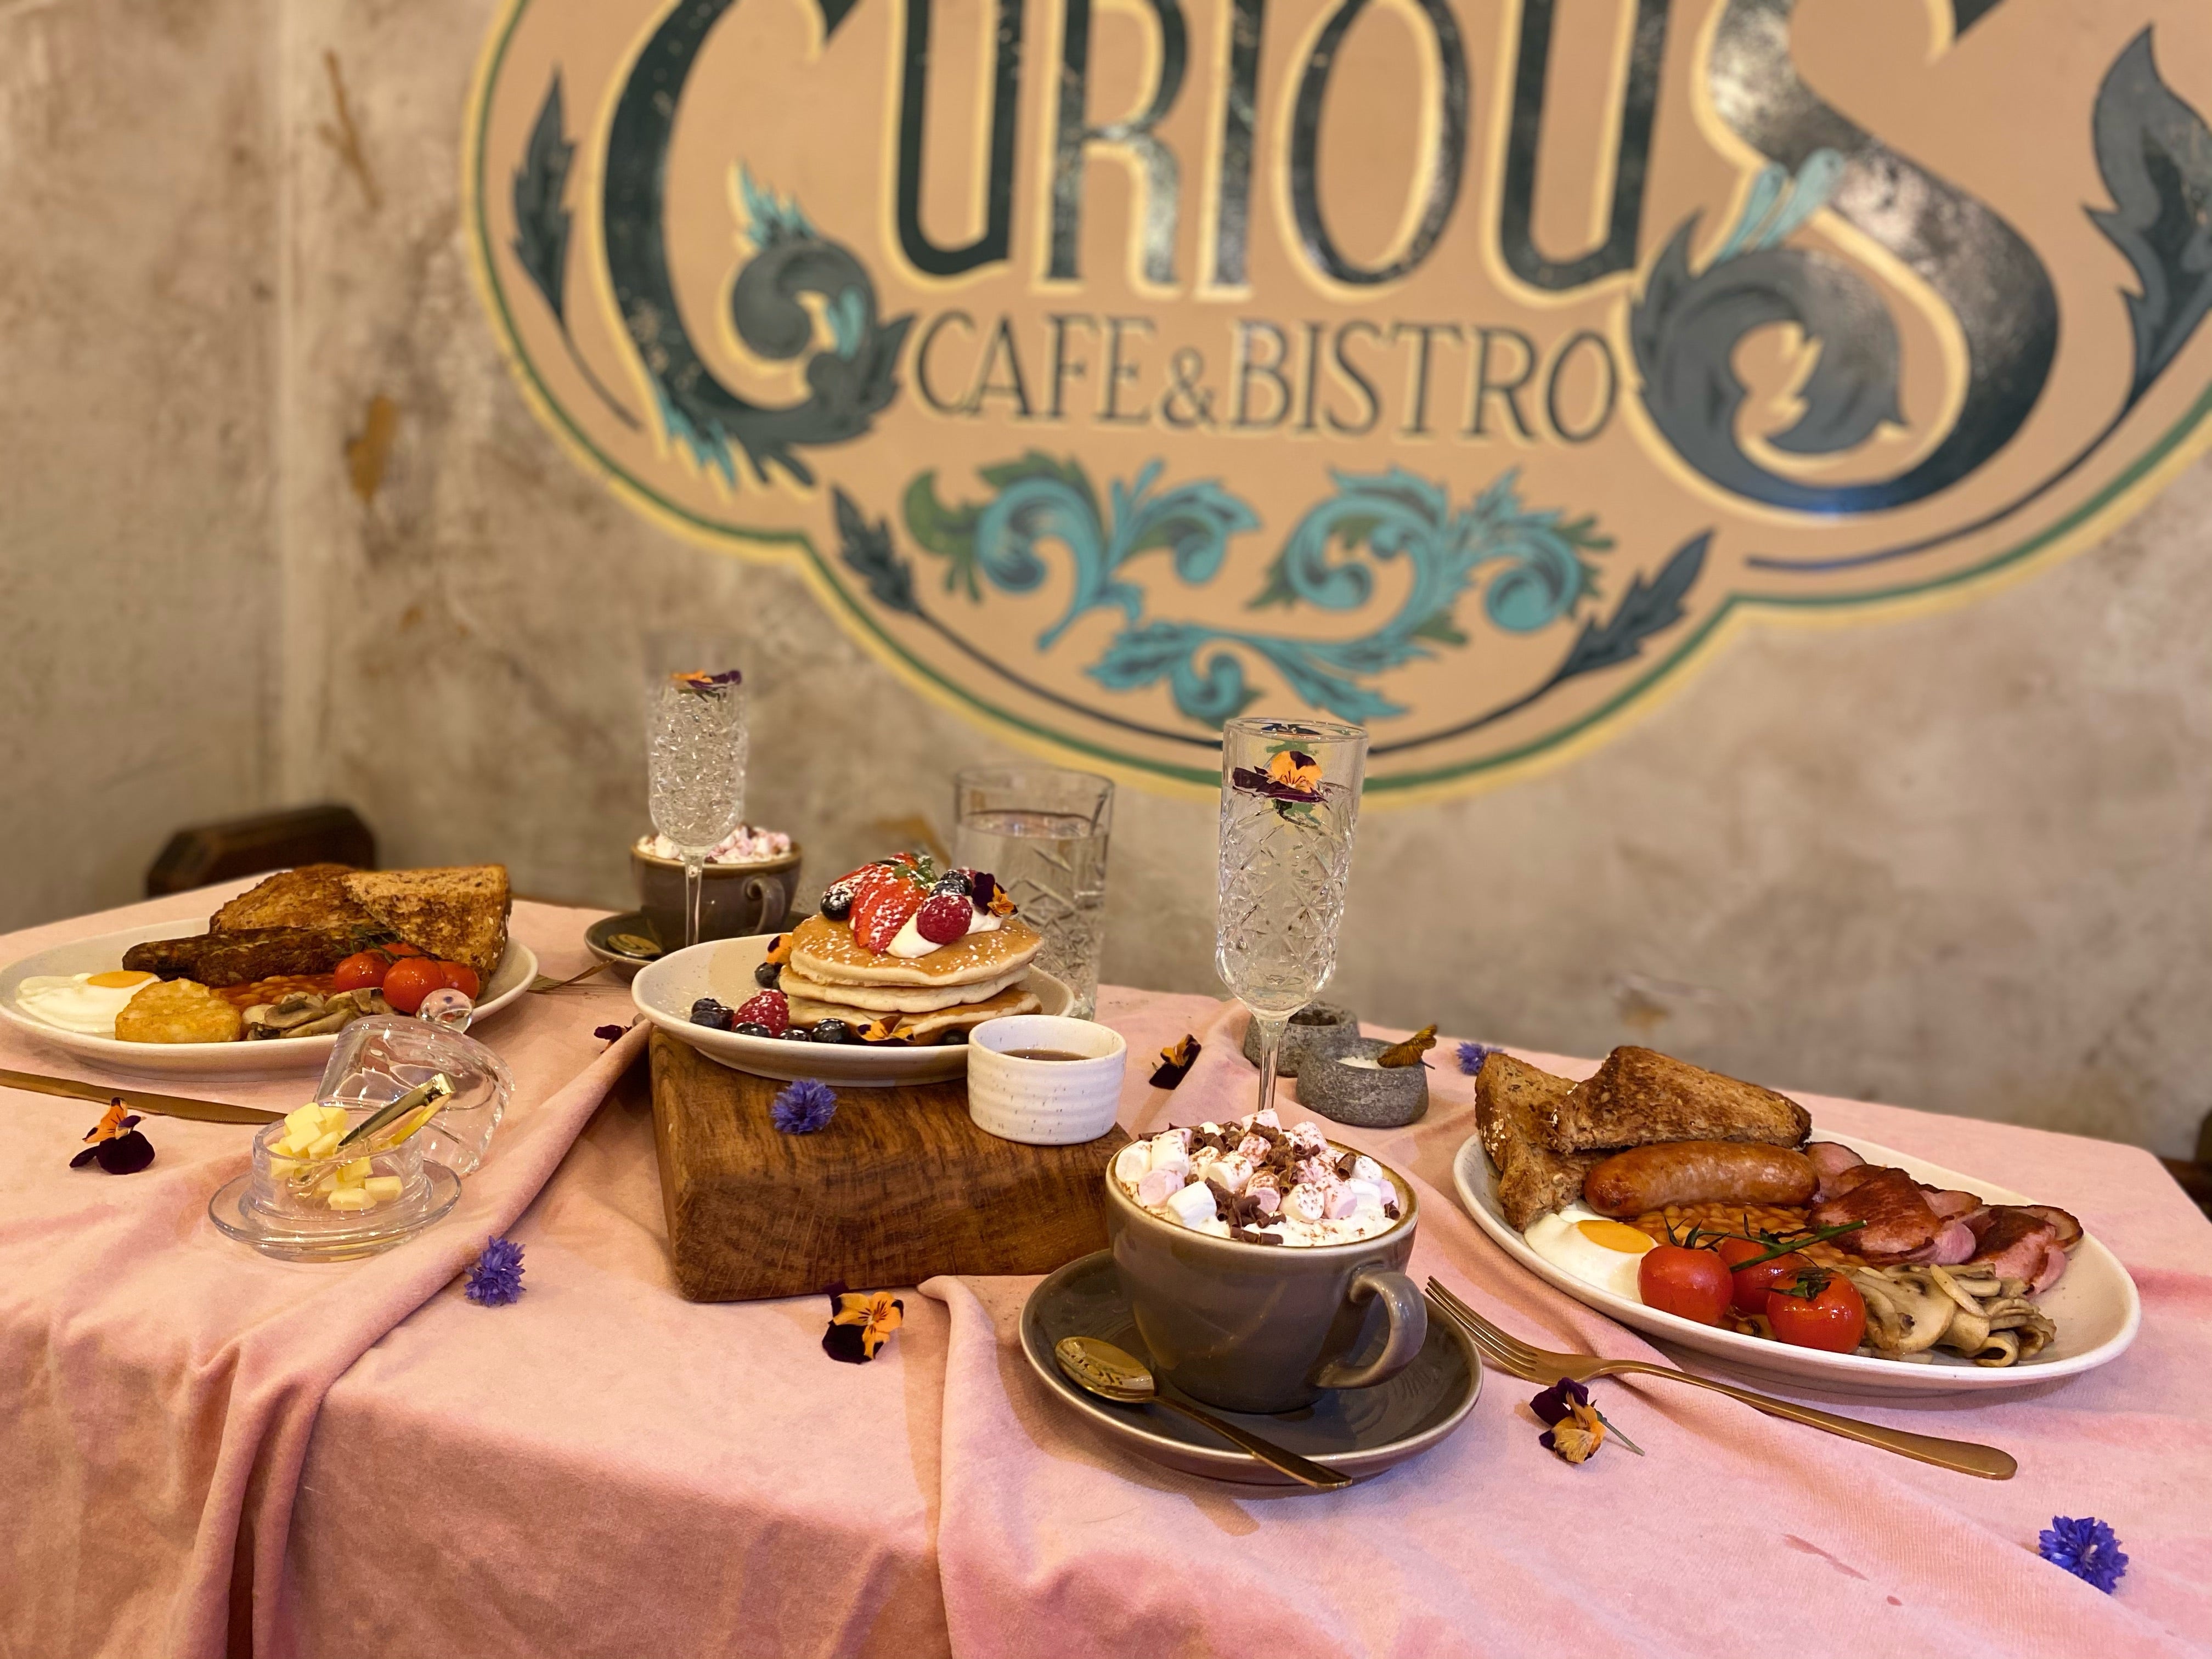 Curious Caf & Bistro